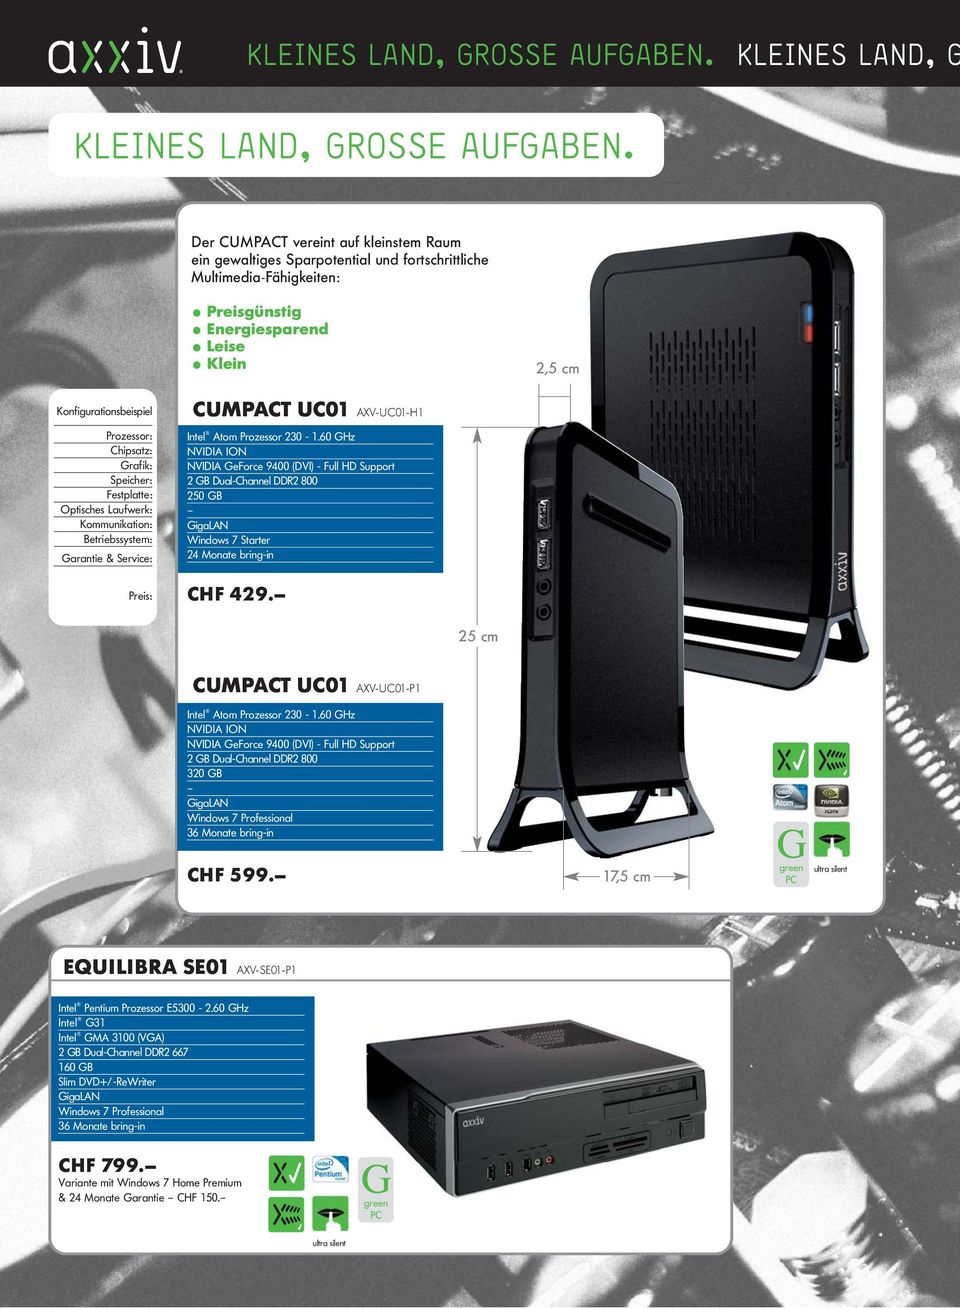 Chipsatz: Grafik: Speicher: Festplatte: Optisches Laufwerk: Kommunikation: Betriebssystem: Garantie & Service: Preis: CUMPACT UC01 AXV-UC01-H1 Intel Atom Prozessor 230-1.